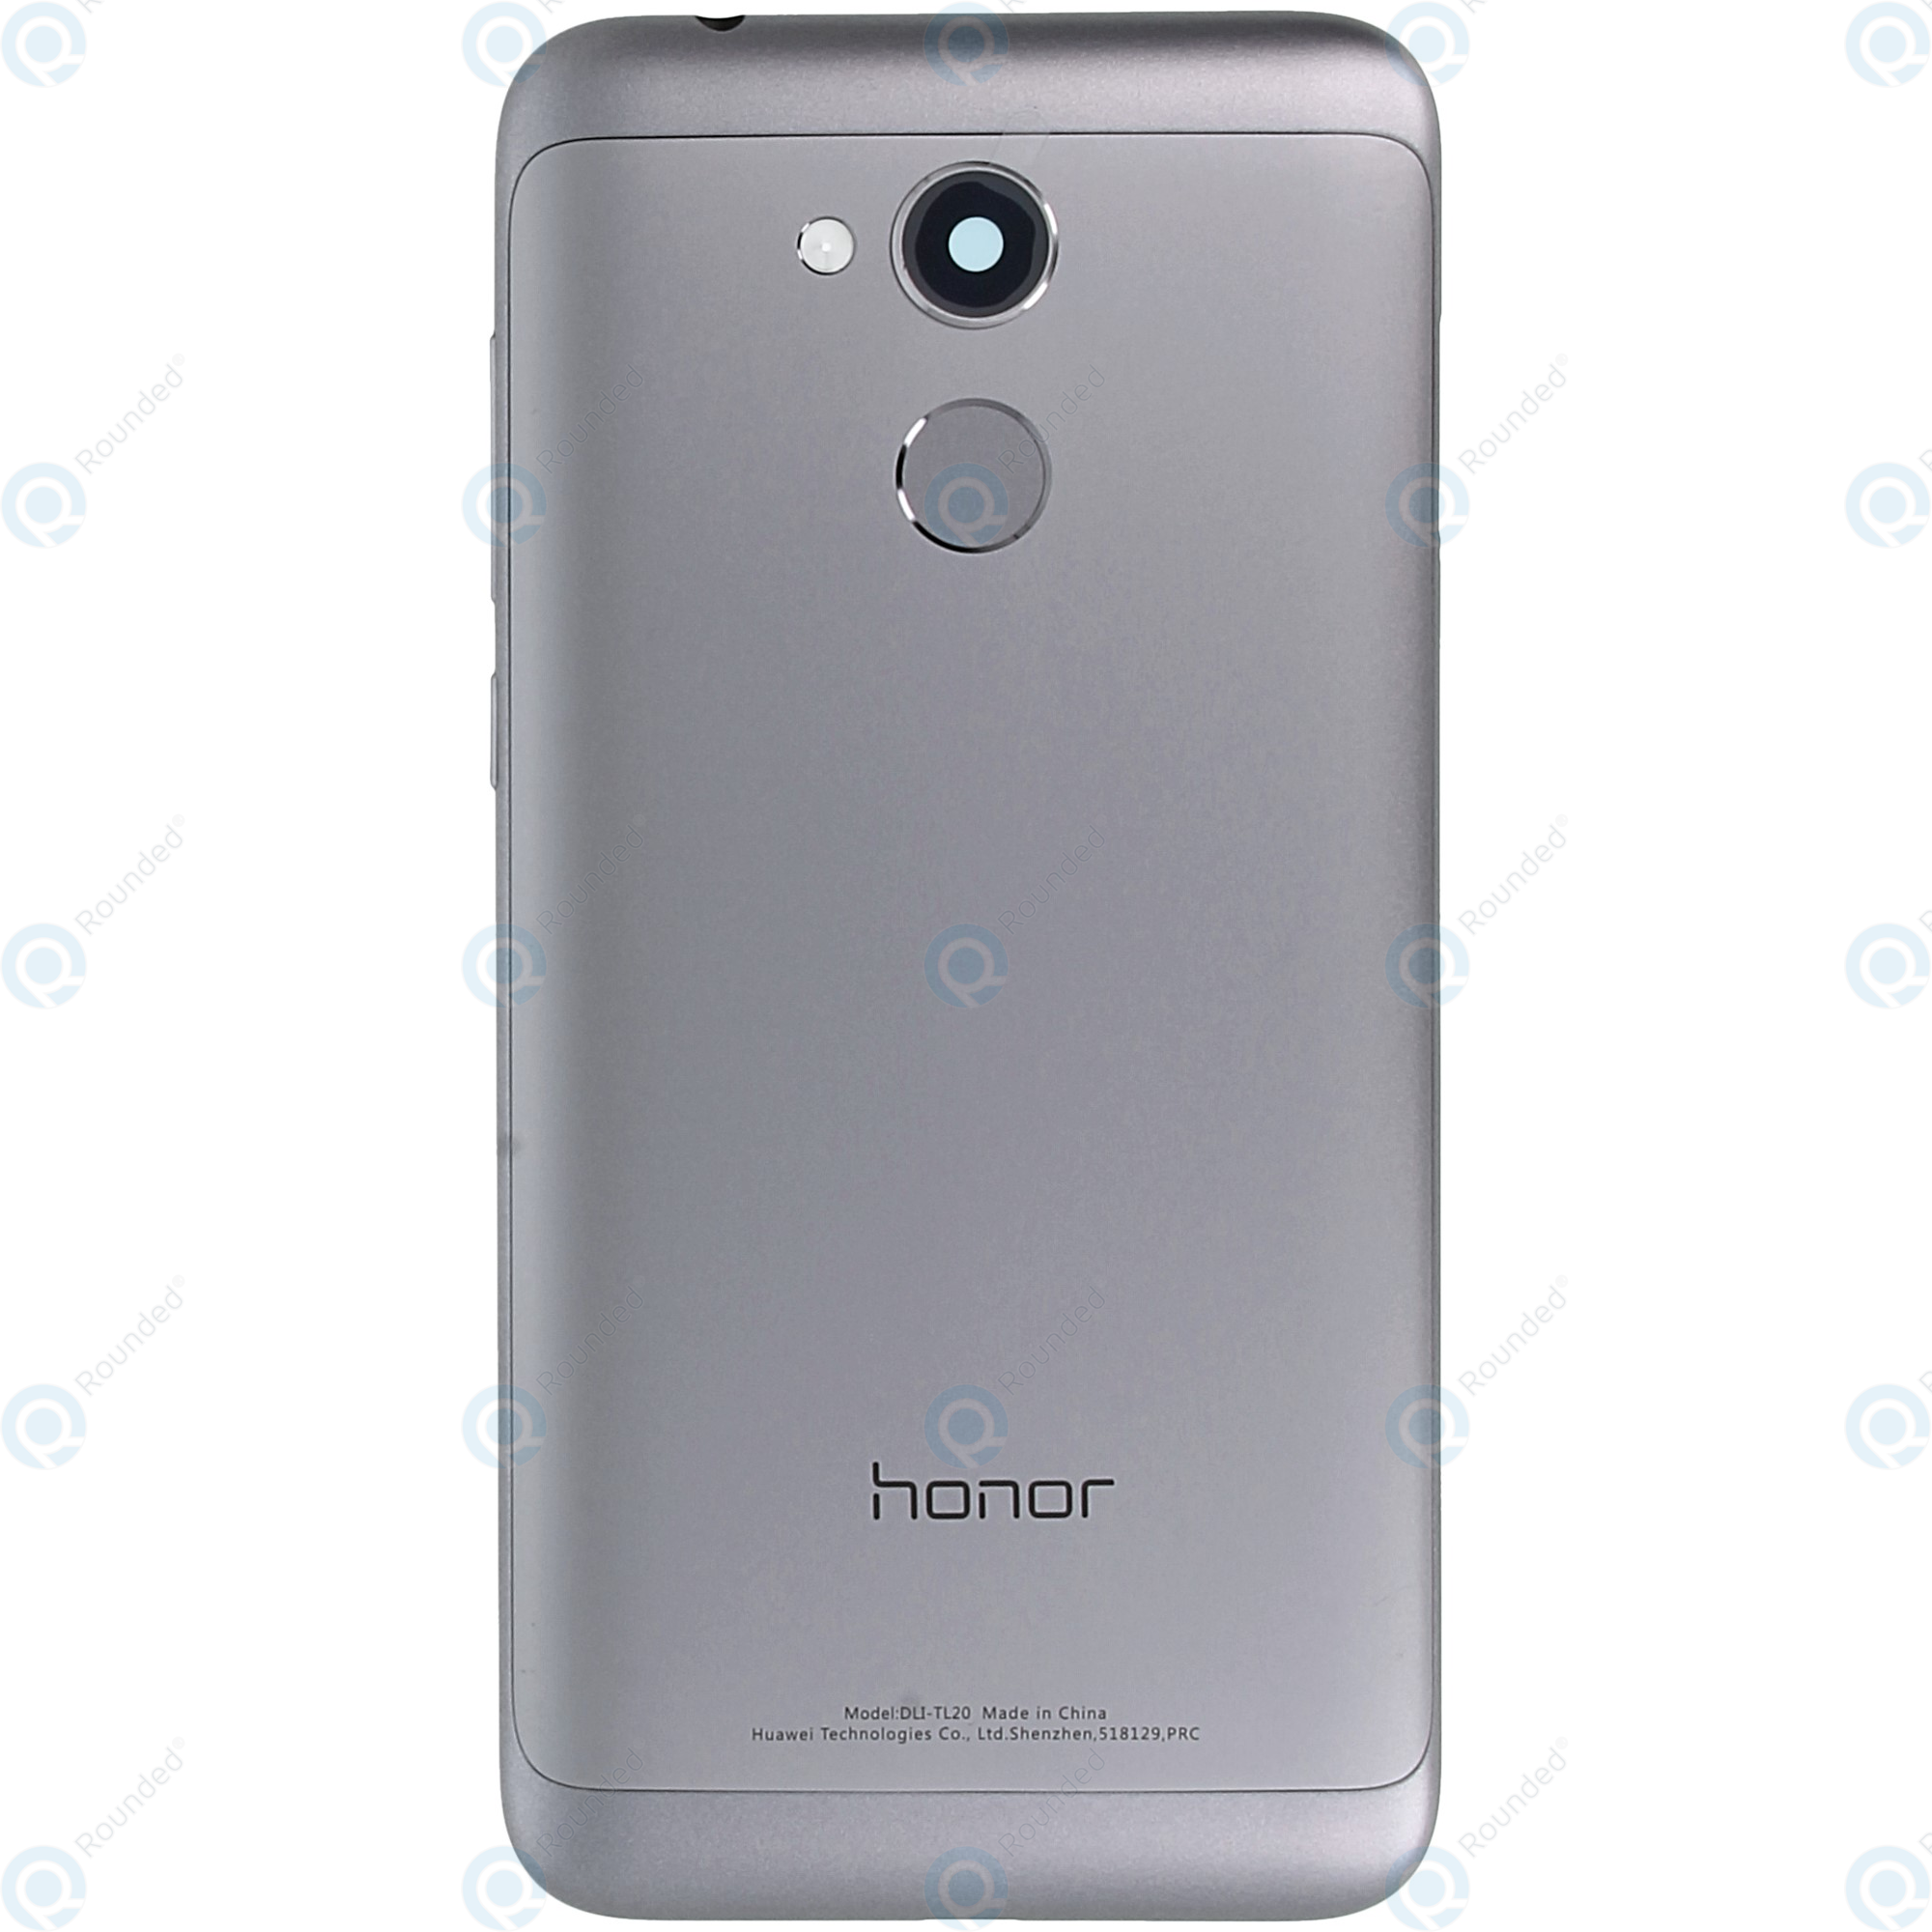 Aanvankelijk gastvrouw Induceren Huawei Honor 6A (DLI-AL10) Battery cover grey 97070RYG